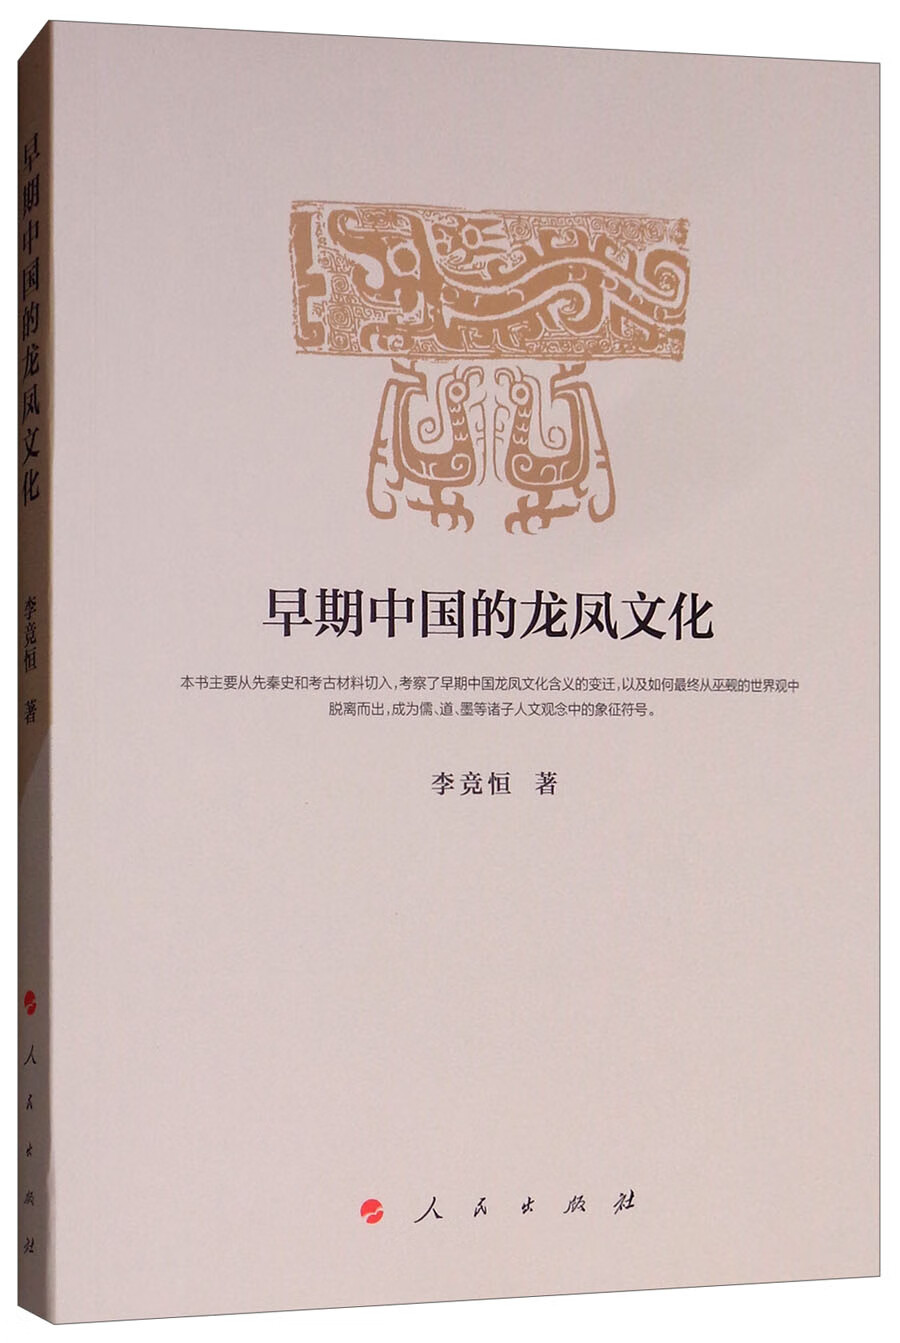 早期中国的龙凤文化 mobi格式下载